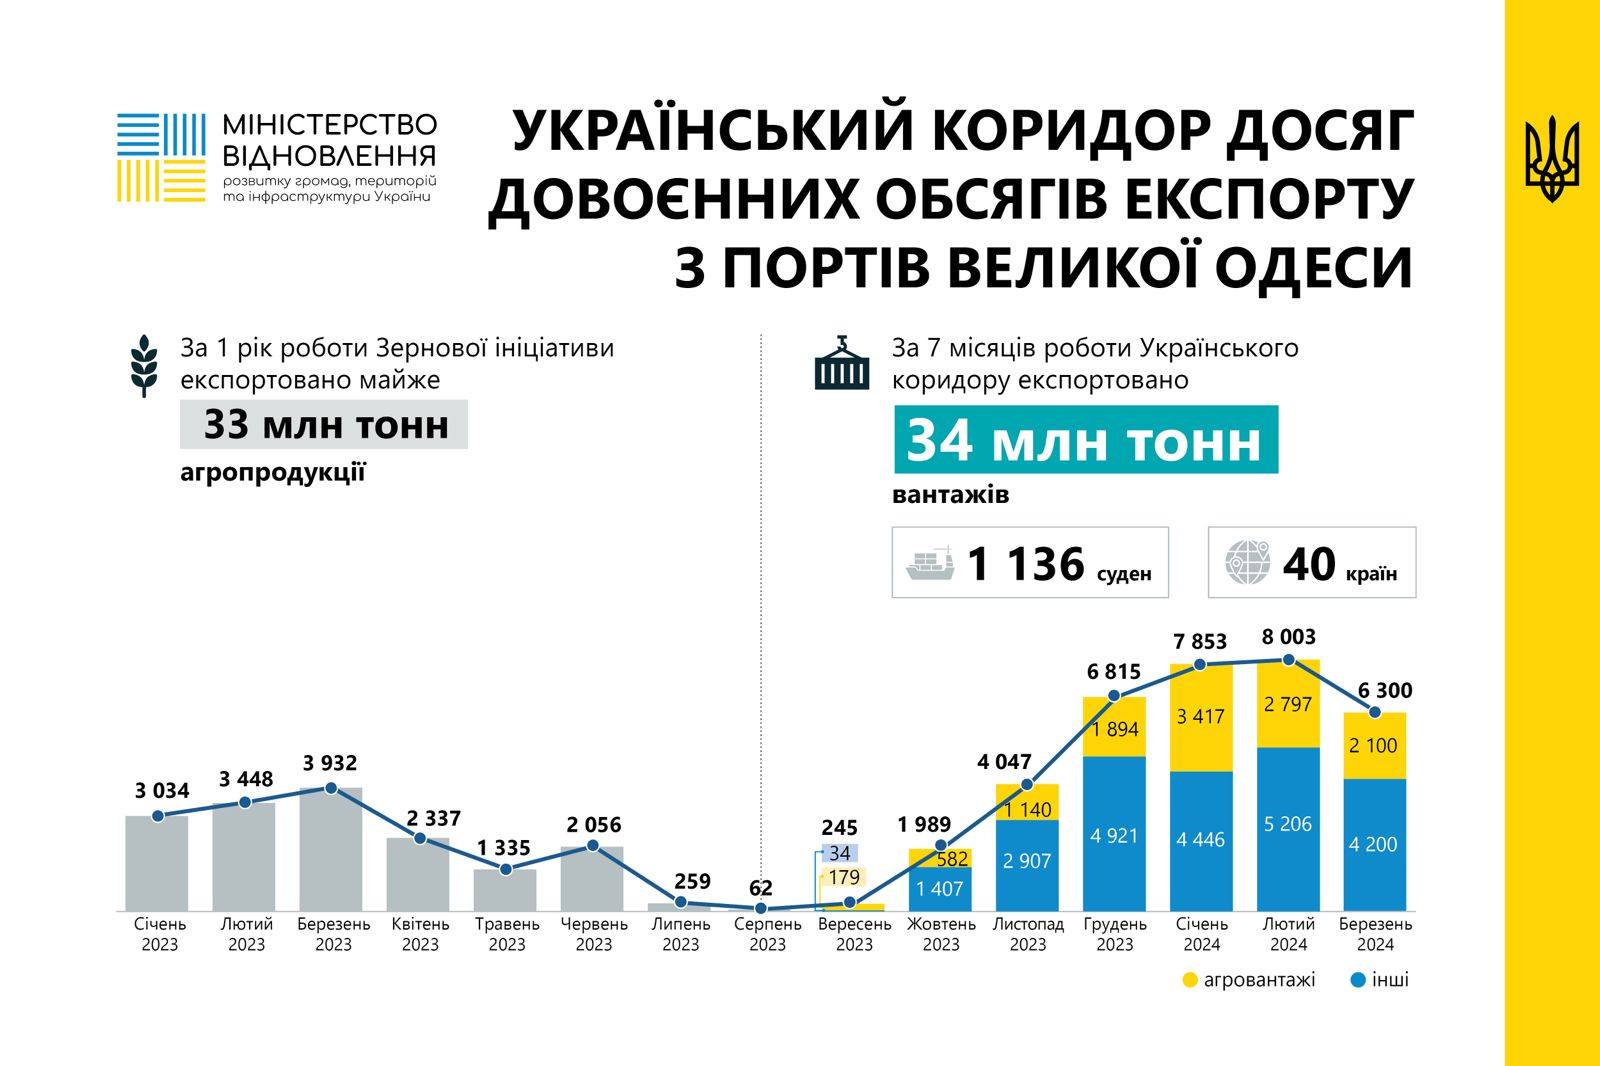 Украина выходит на довоенные объемы экспорта из портов Большой Одессы — фото 1